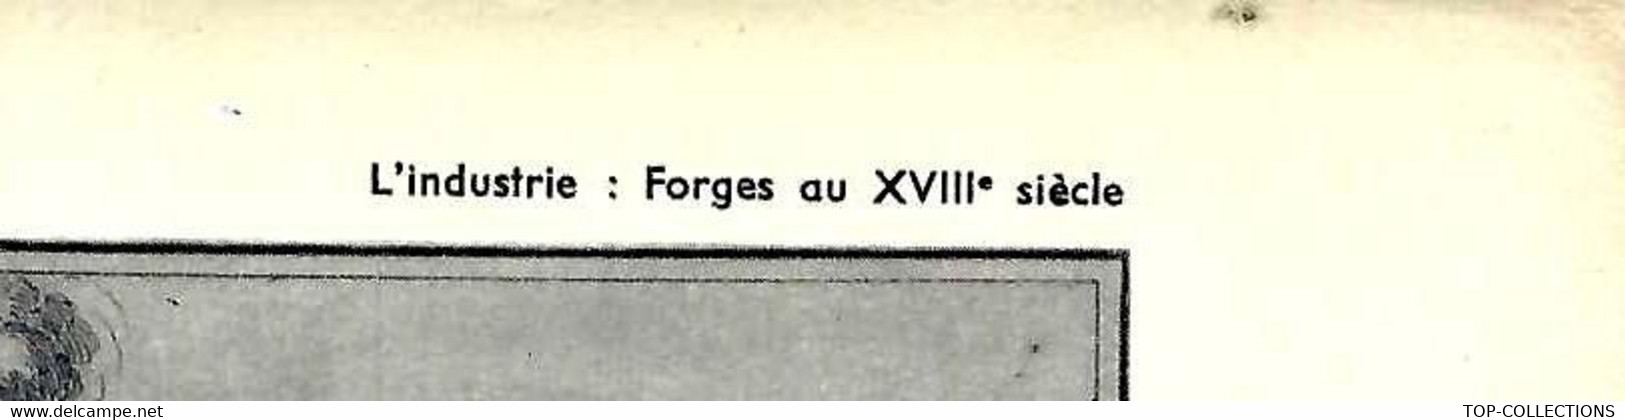 INDUSTRIE DES FORGES AU XVIII° SIECLE OUTIL PEDAGOGIQUE HACHETTE 1954  B.E.V.SCANS - Colecciones